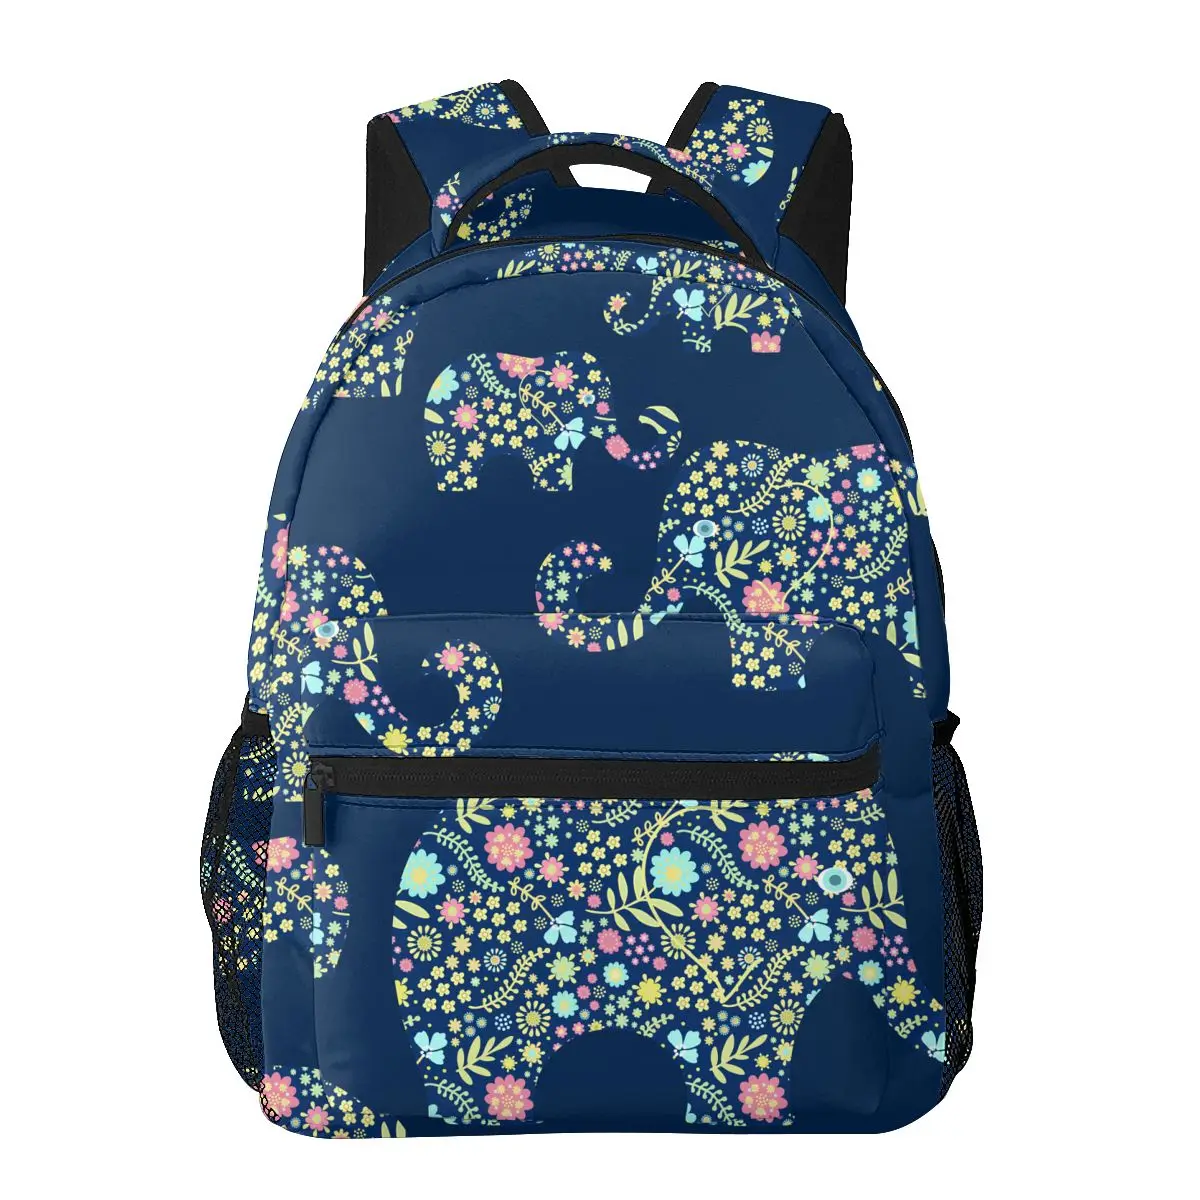 Повседневный новый простой женский рюкзак для подростковых путешествий, сумка через плечо с цветочными слонами на синем фоне - 5